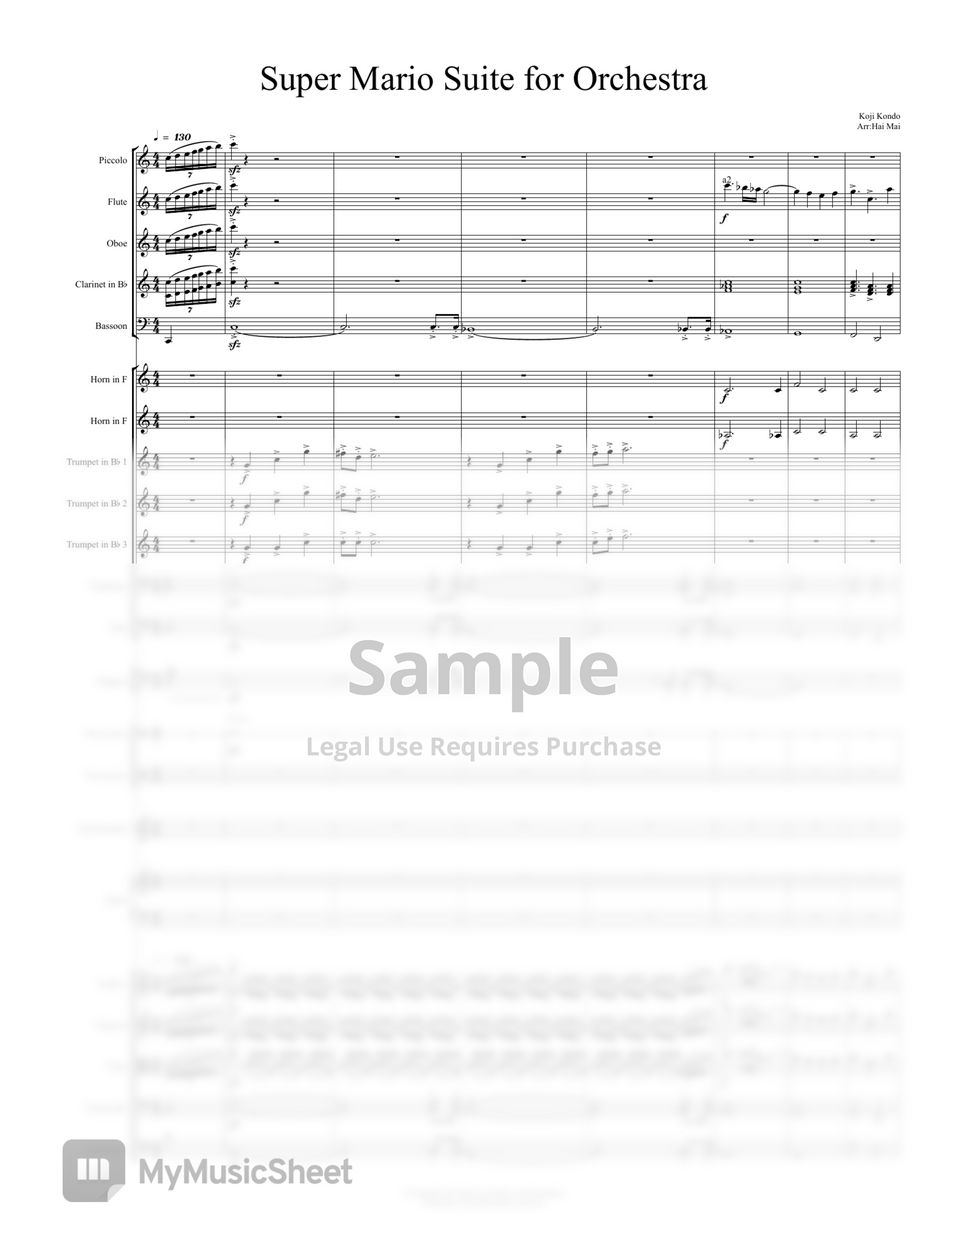 Koji Kondo - Super Mario Suite for Orchestra - Full Score by Hai Mai